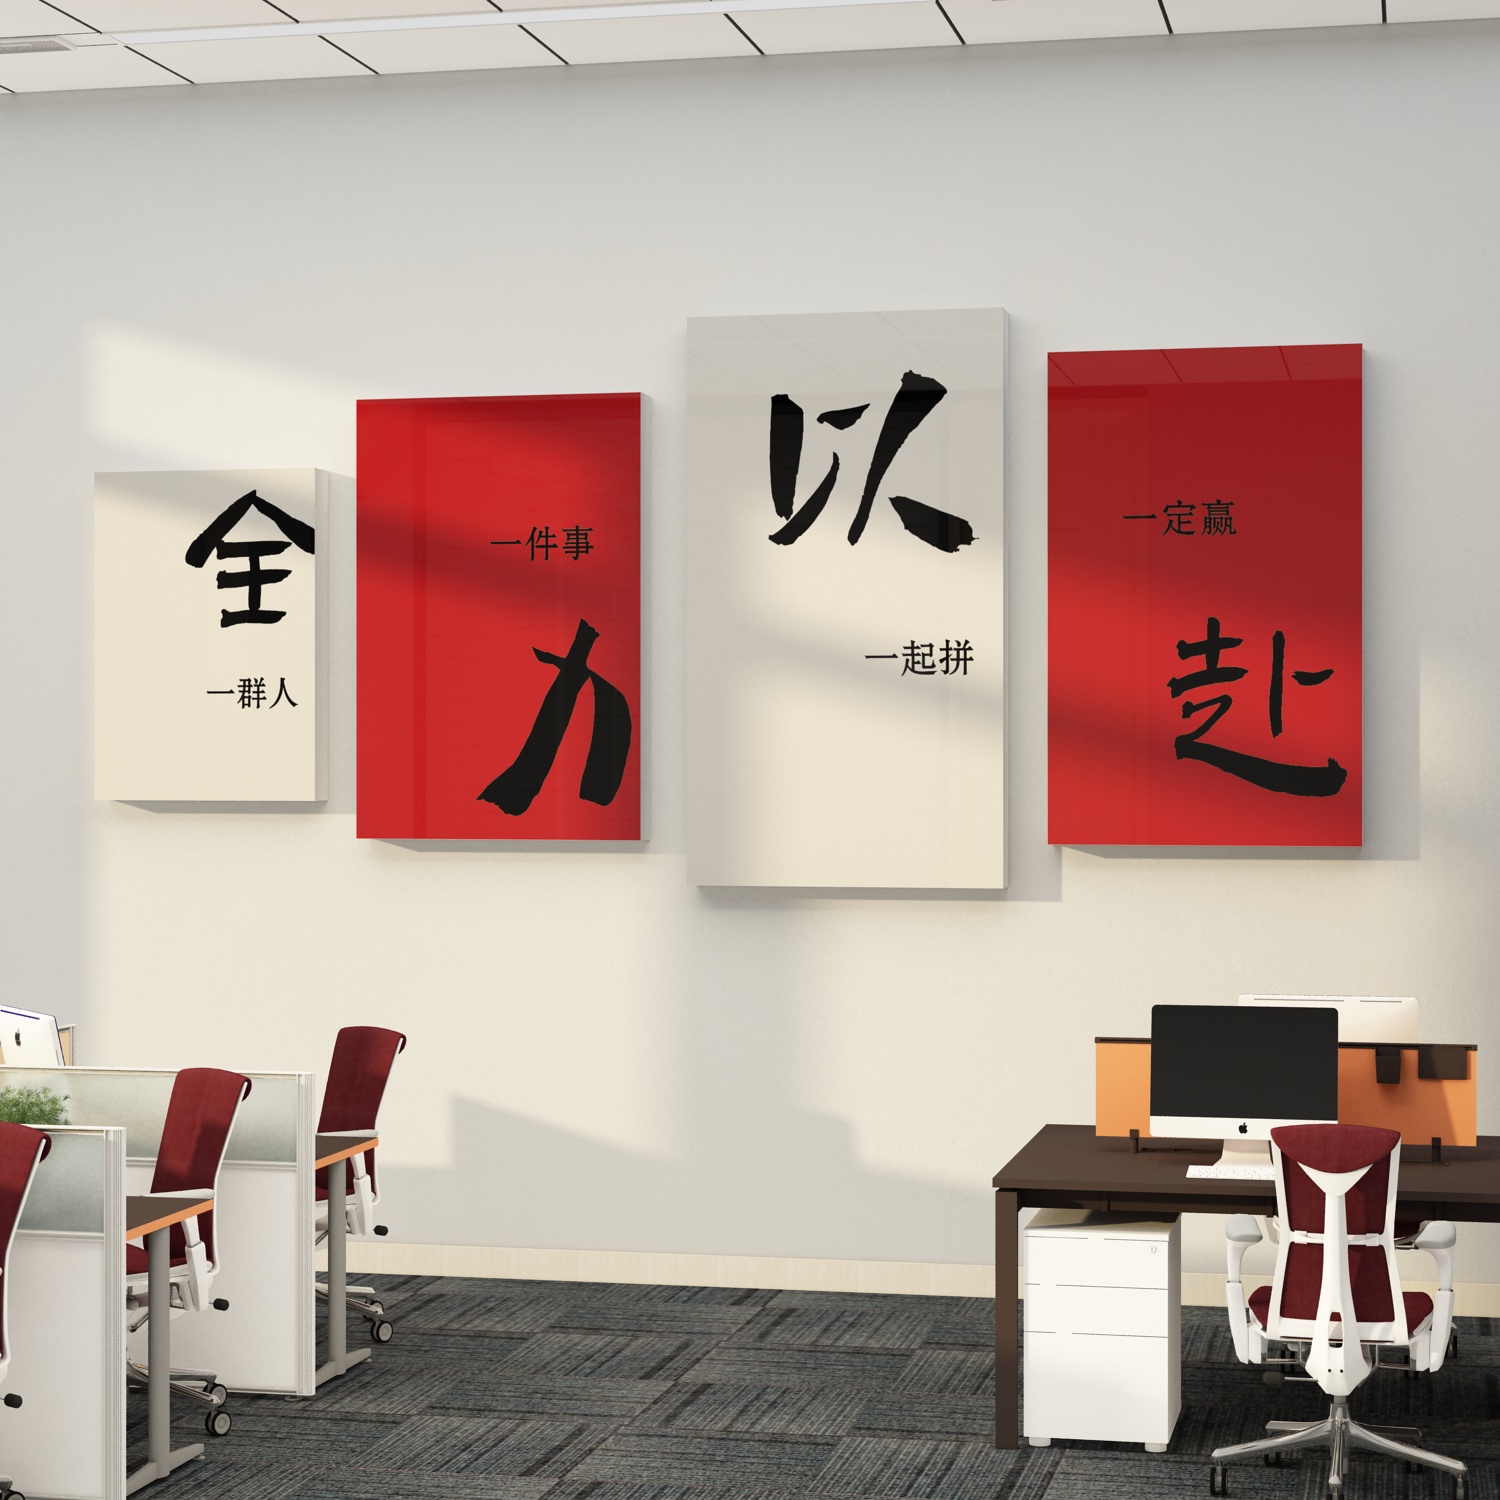 办公室墙面装饰公司企业文化会议室励志标语氛围布置全力以赴贴画